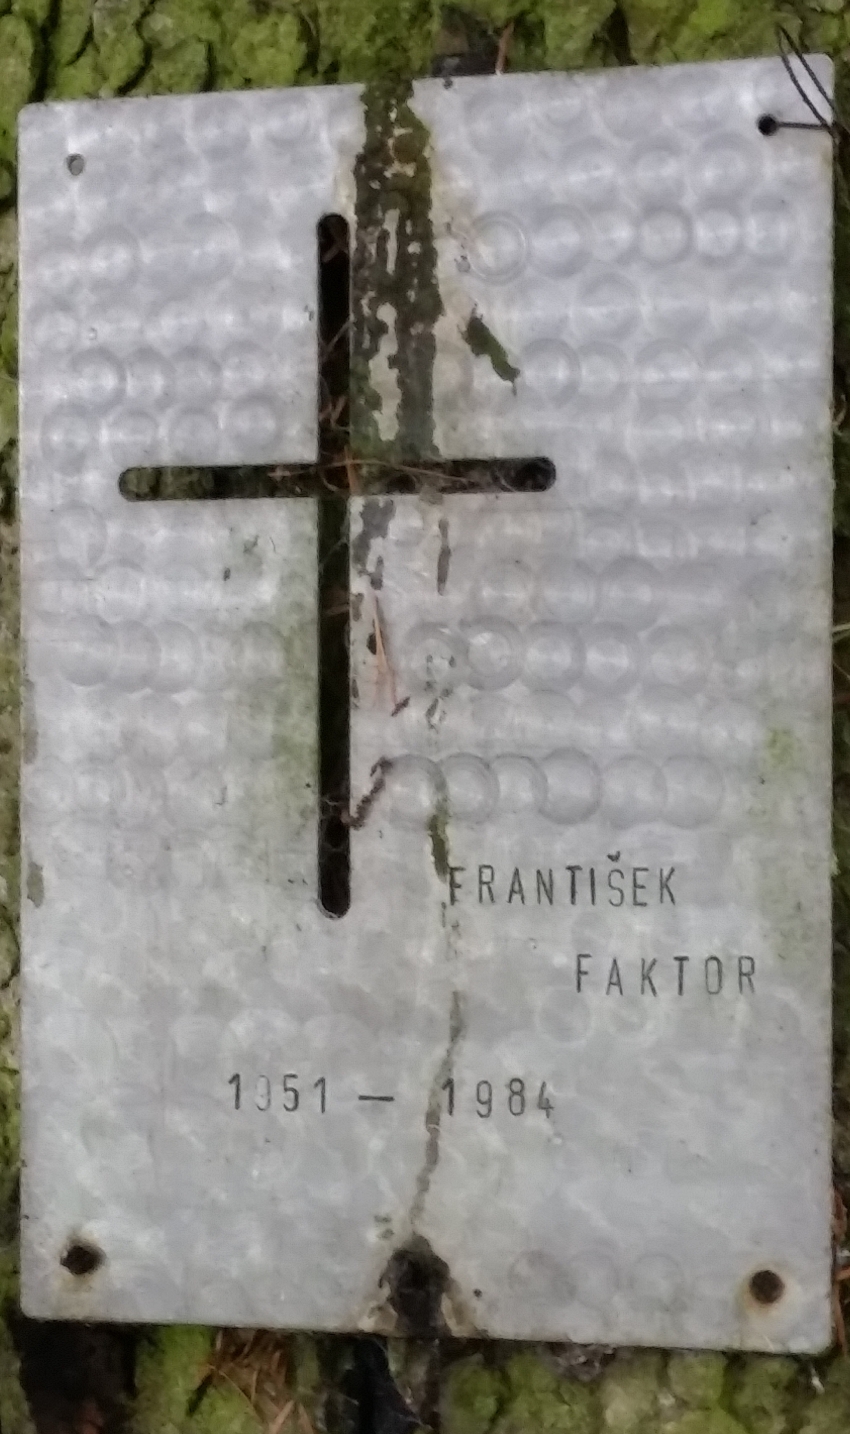 Plechová deska na stromě u obce Wielands (Rakousko), pod kterým 5. 11. 1984 nalezli tělo Františka Faktora. Foto: M. Petráček